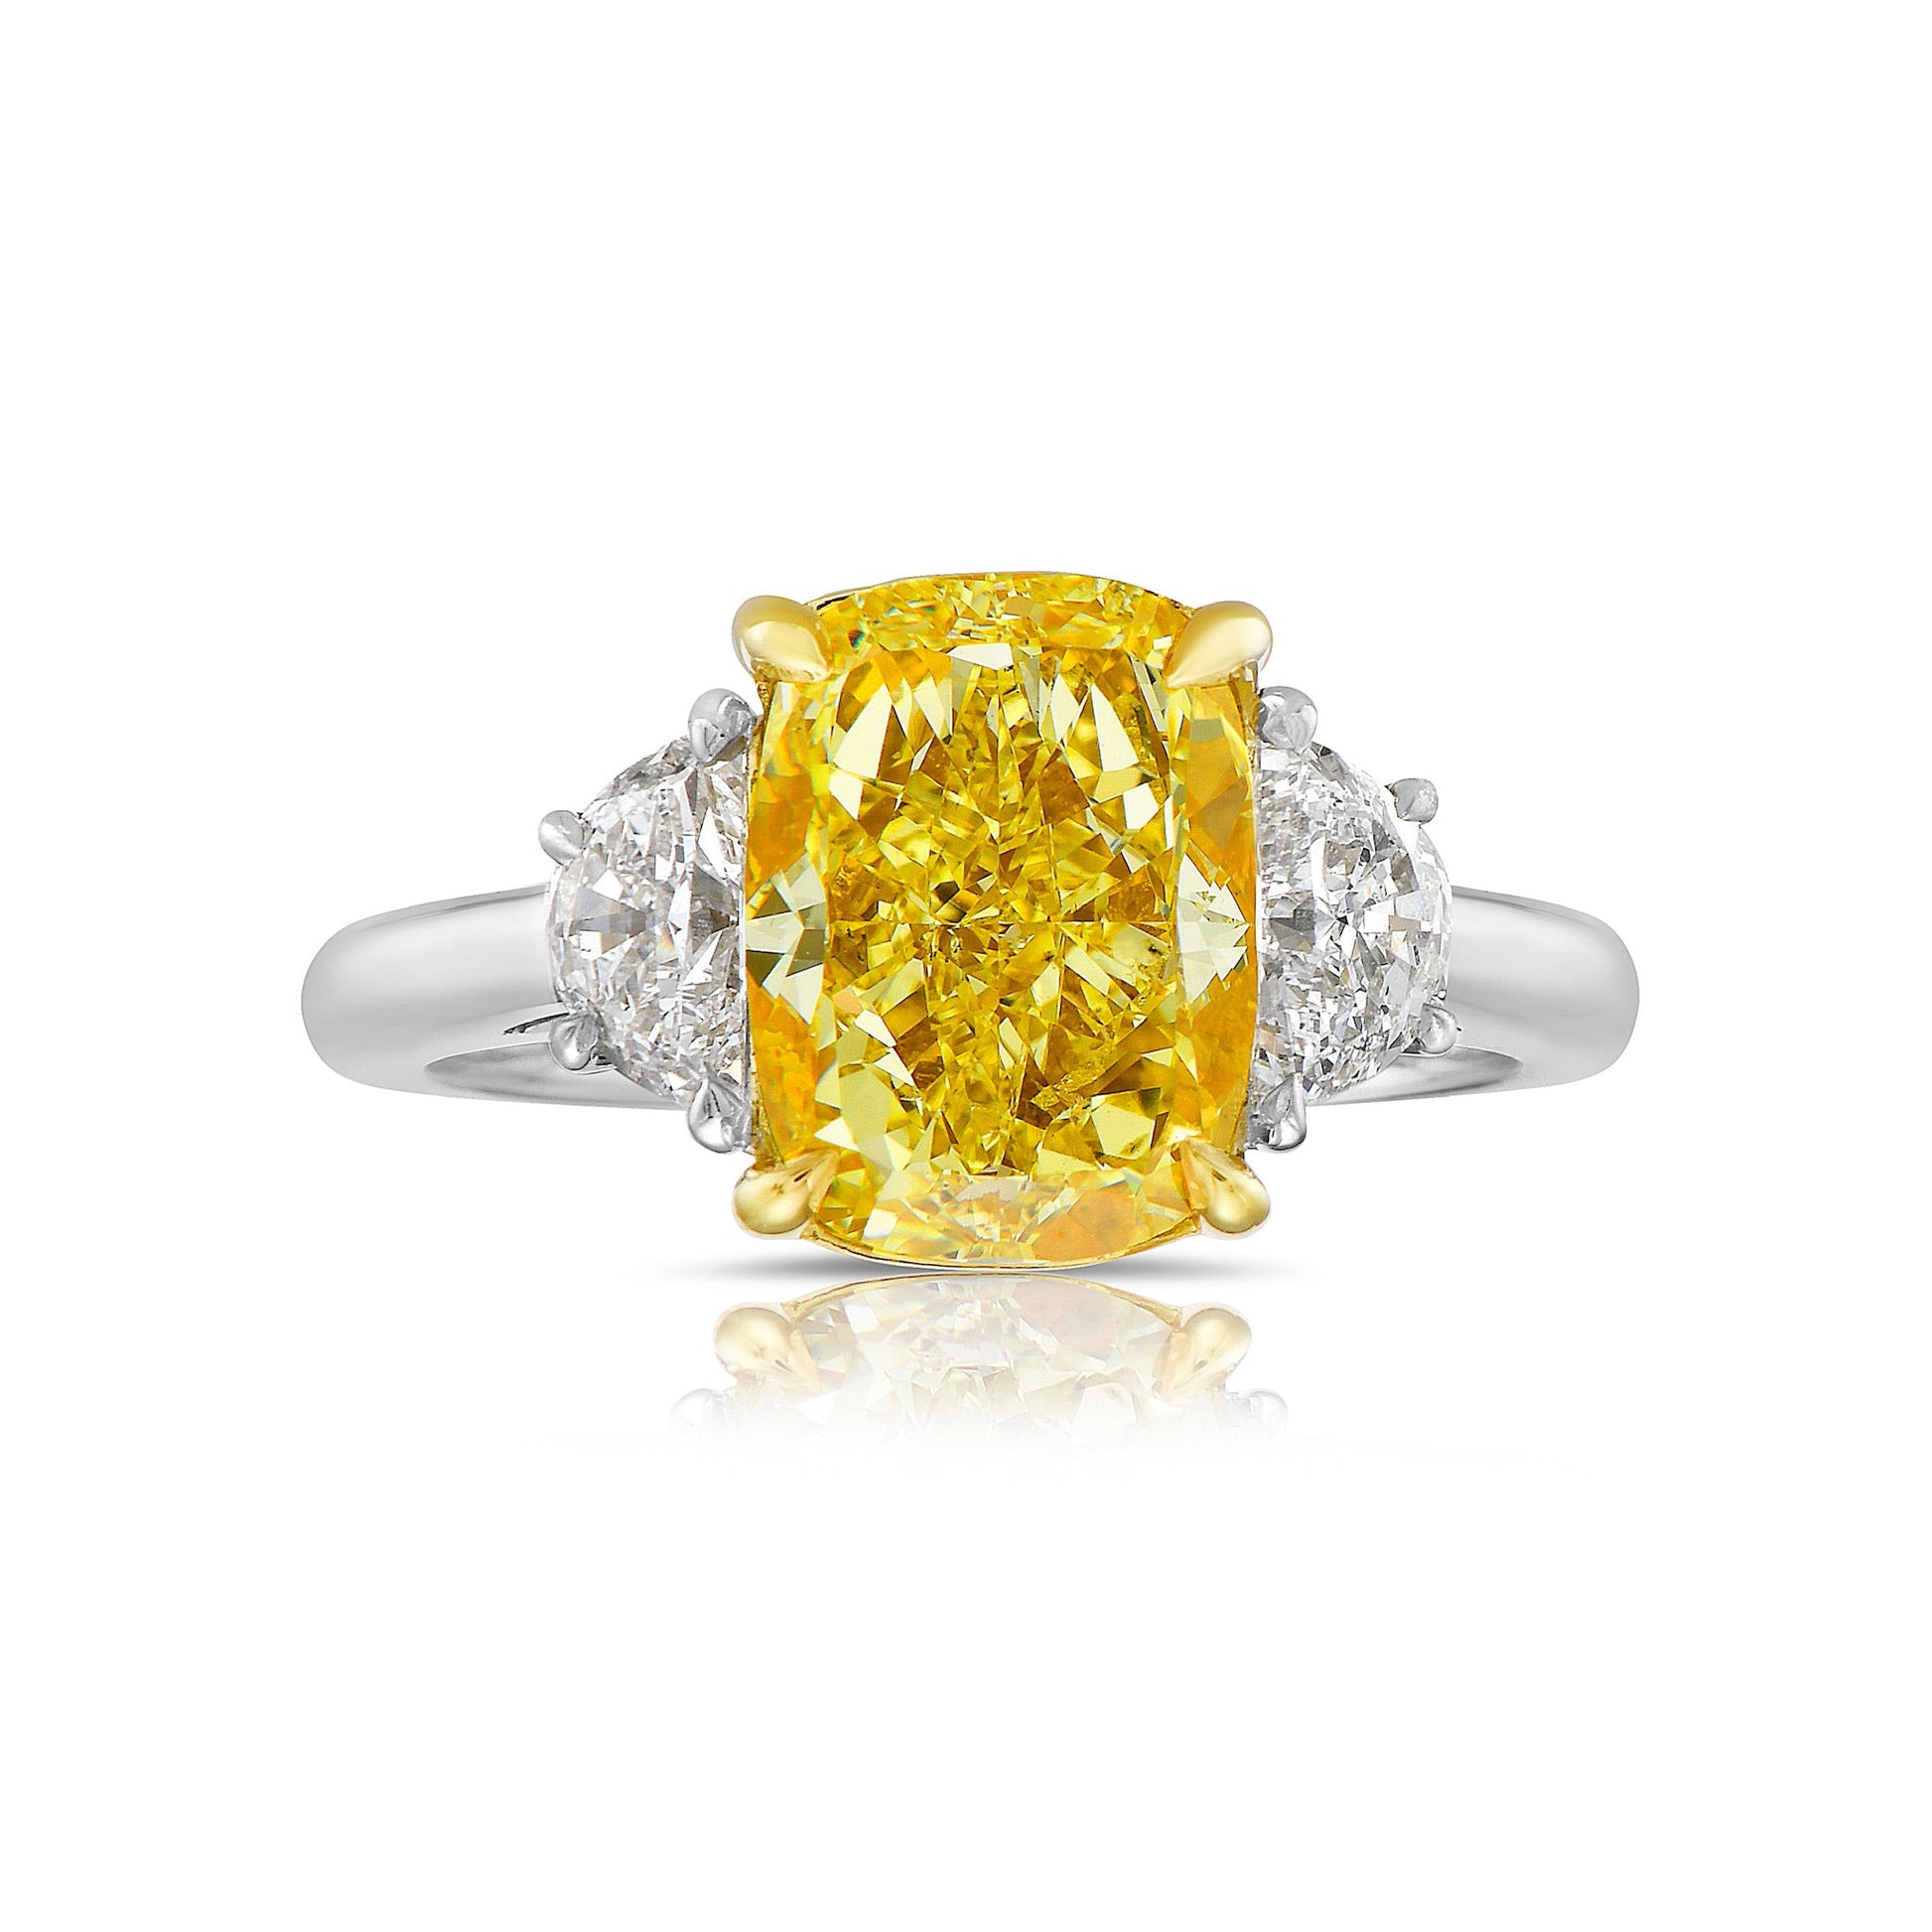 Elongated cushion Yellow diamond ring. fancy yellow ring. 5 carat yellow diamond. 5 carat yellow diamond ring. long cushion cut. long cushion yellow diamond. yellow diamonds.